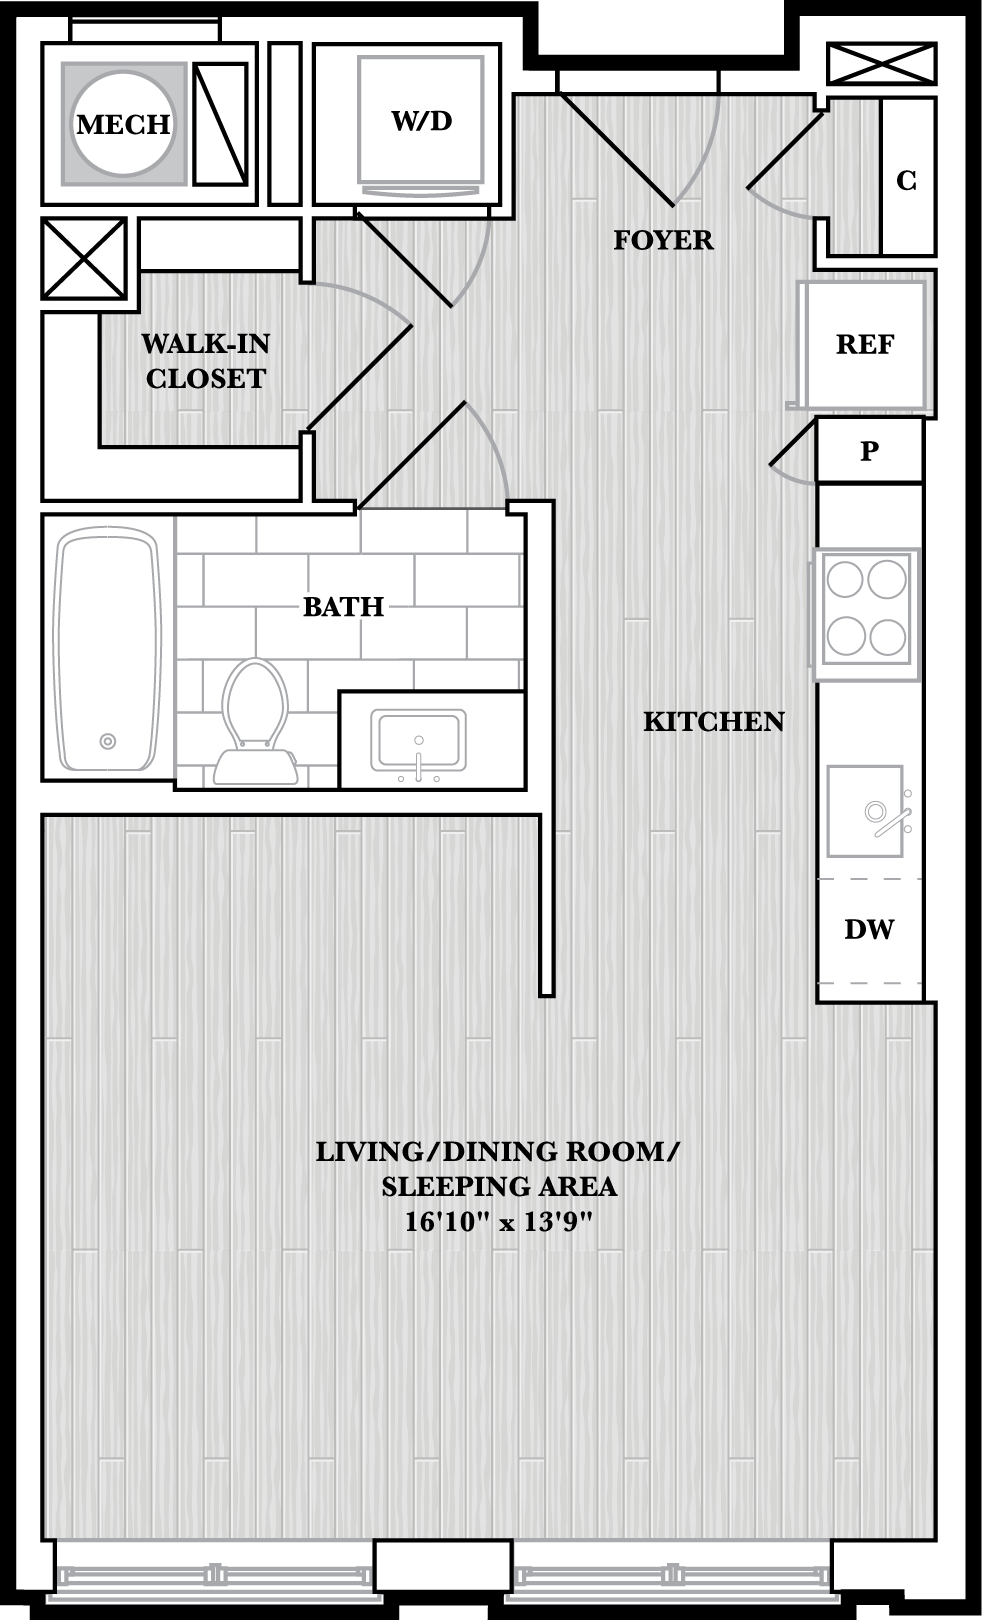 Floor Plan Image of Apartment Apt N227